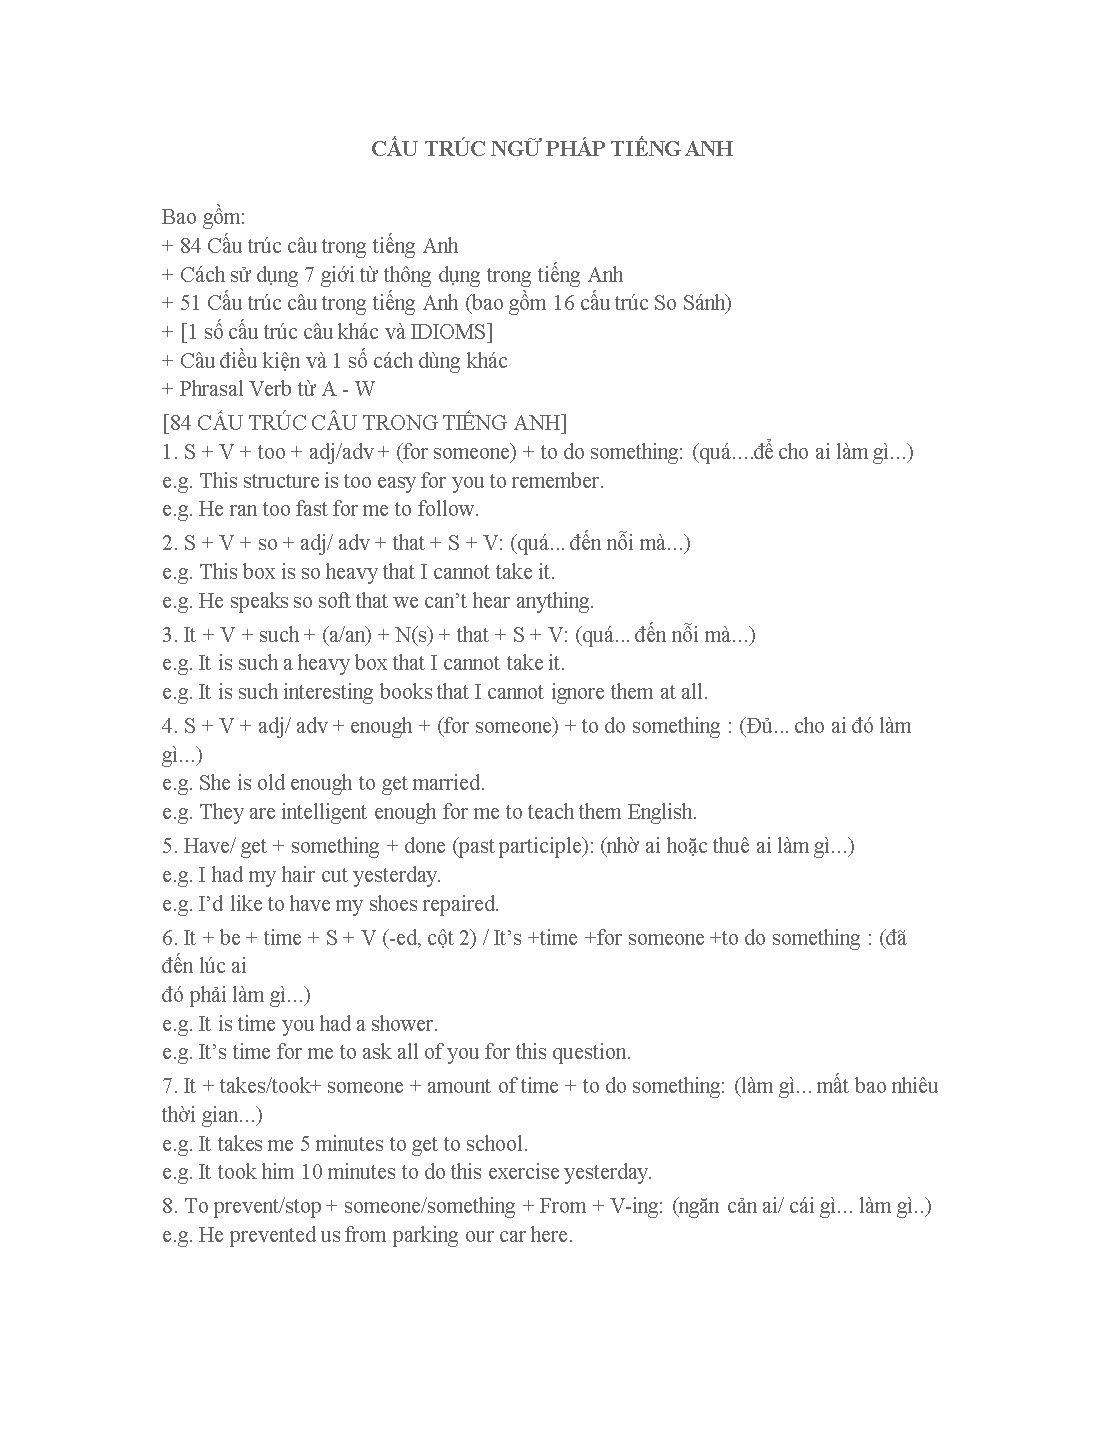 Cấu trúc ngữ pháp tiếng Anh trang 1